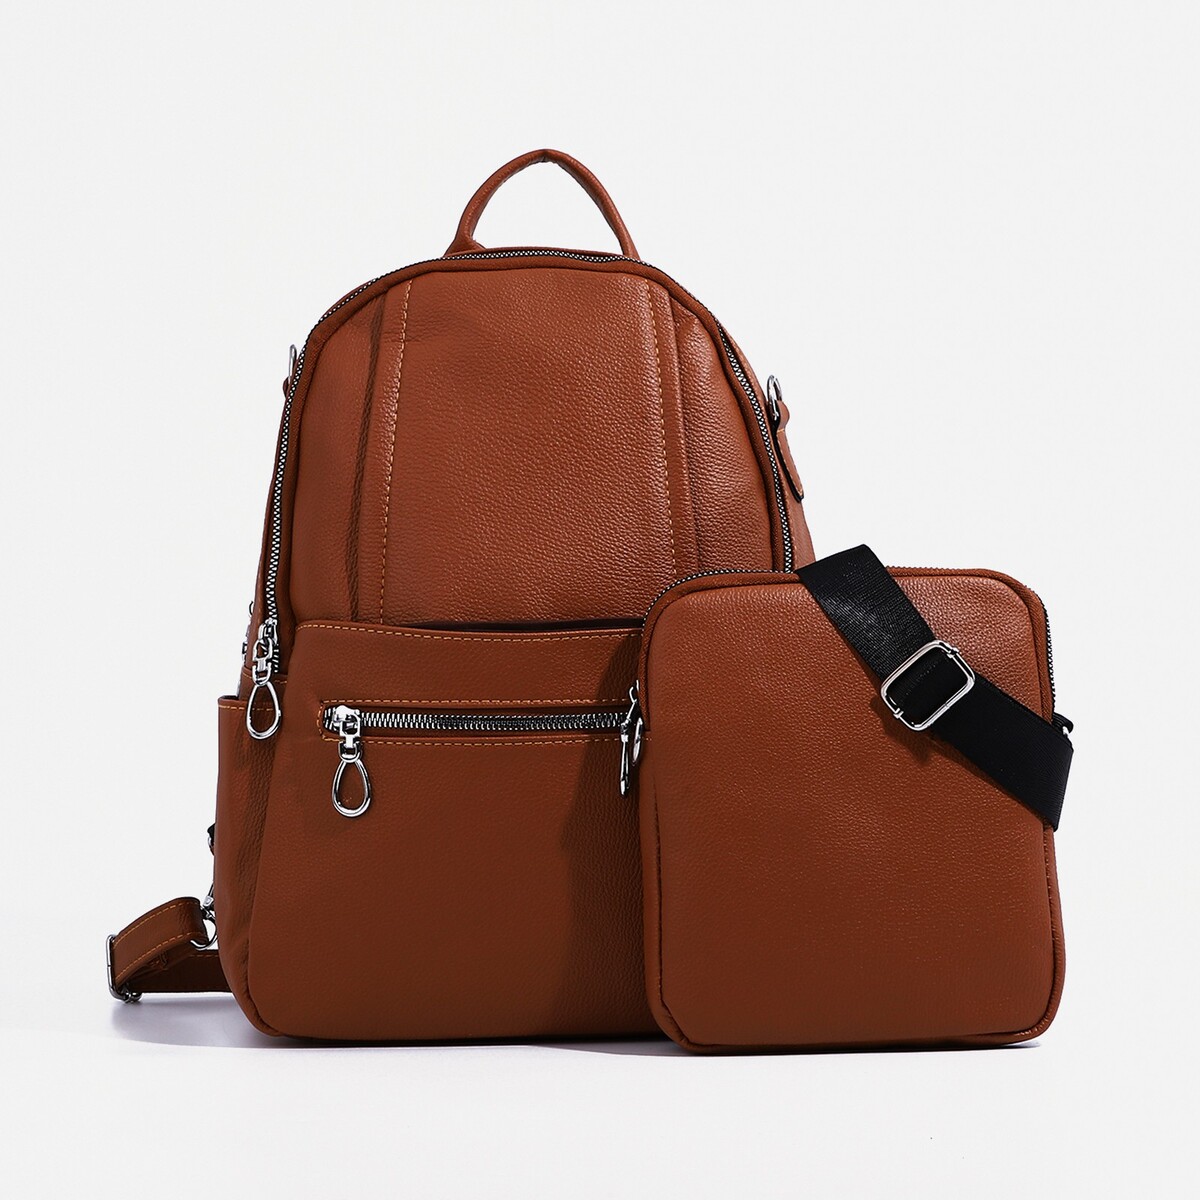 Рюкзак женский из искусственной кожи на молнии, 4 кармана, сумка, цвет коричневый рюкзак школьный из текстиля на молнии 3 кармана пенал коричневый оранжевый